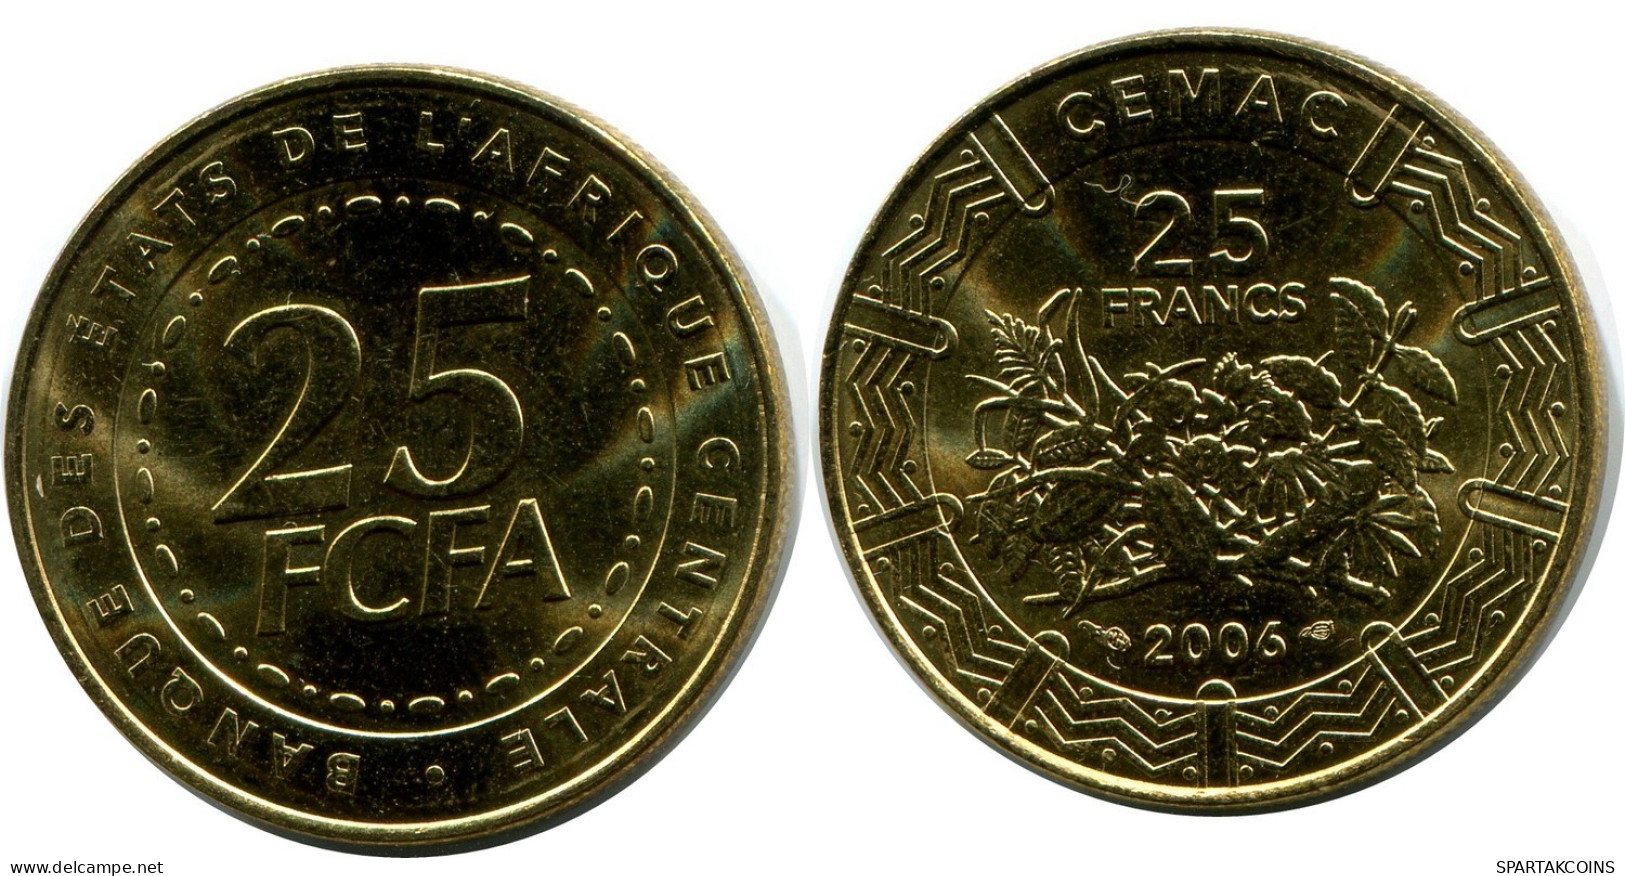 25 FRANCS CFA 2006 ESTADOS DE ÁFRICA CENTRAL (BEAC) Moneda #AP863.E.A - Centraal-Afrikaanse Republiek